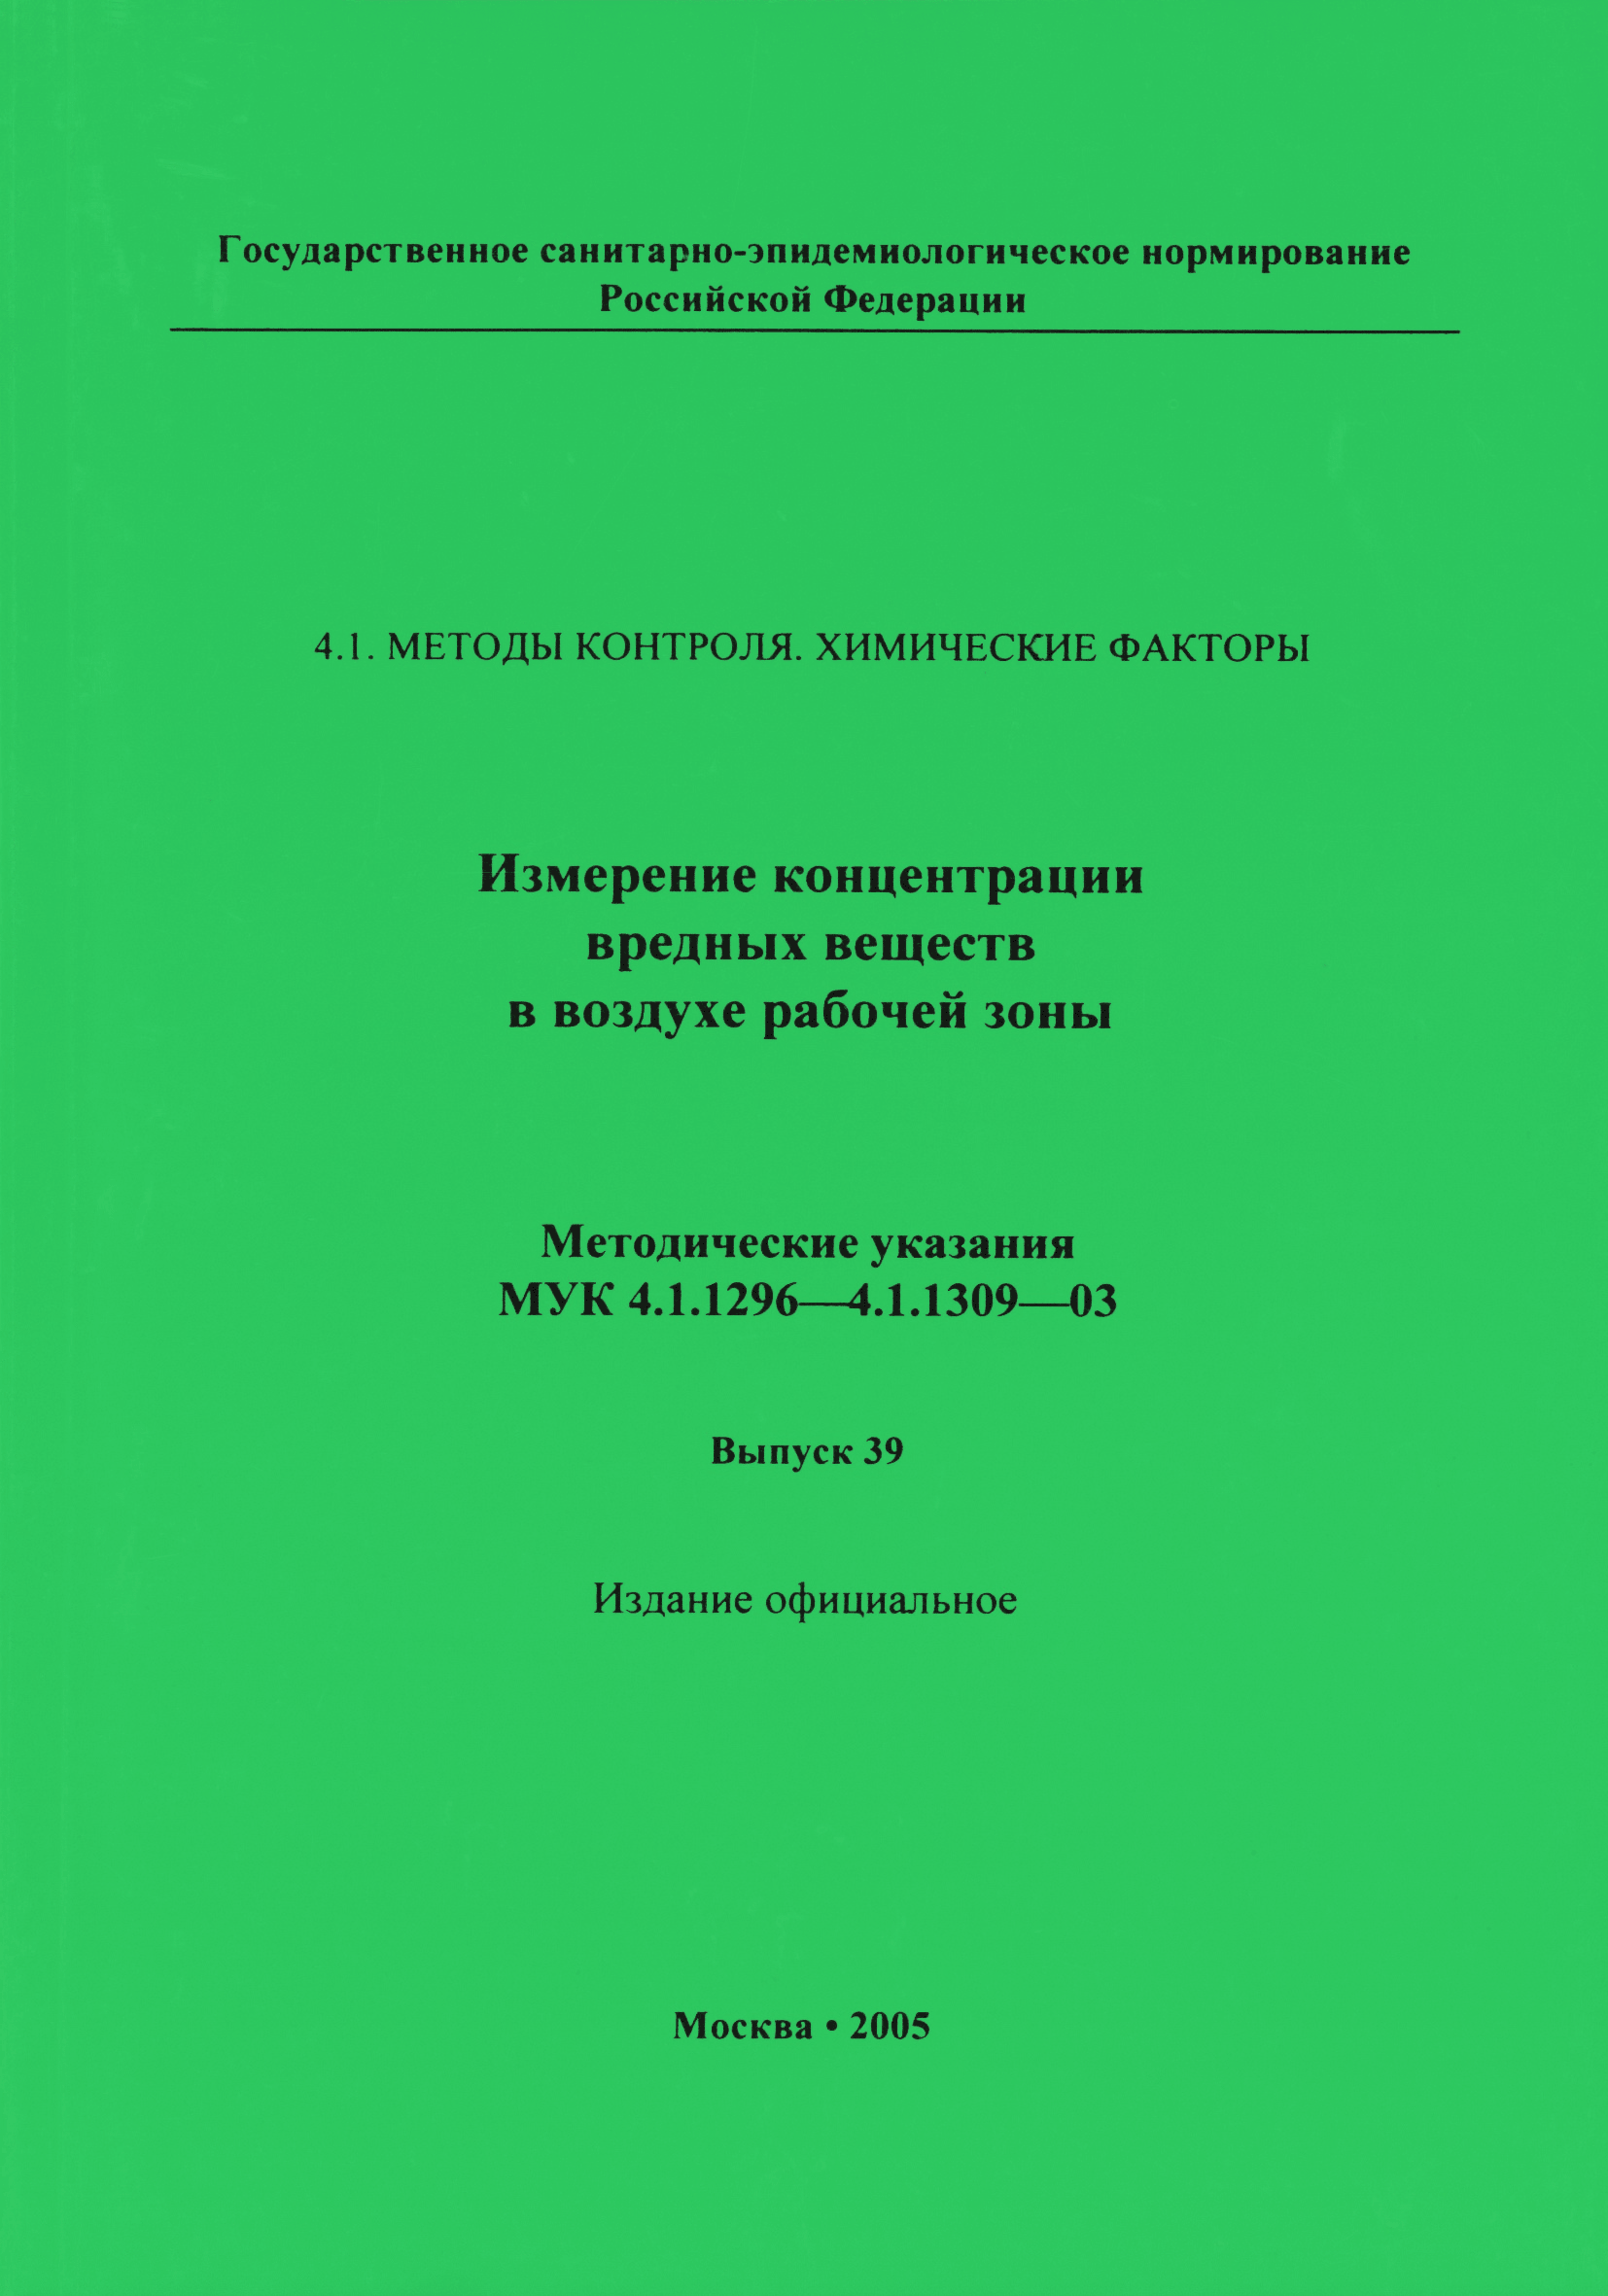 МУК 4.1.1301-03